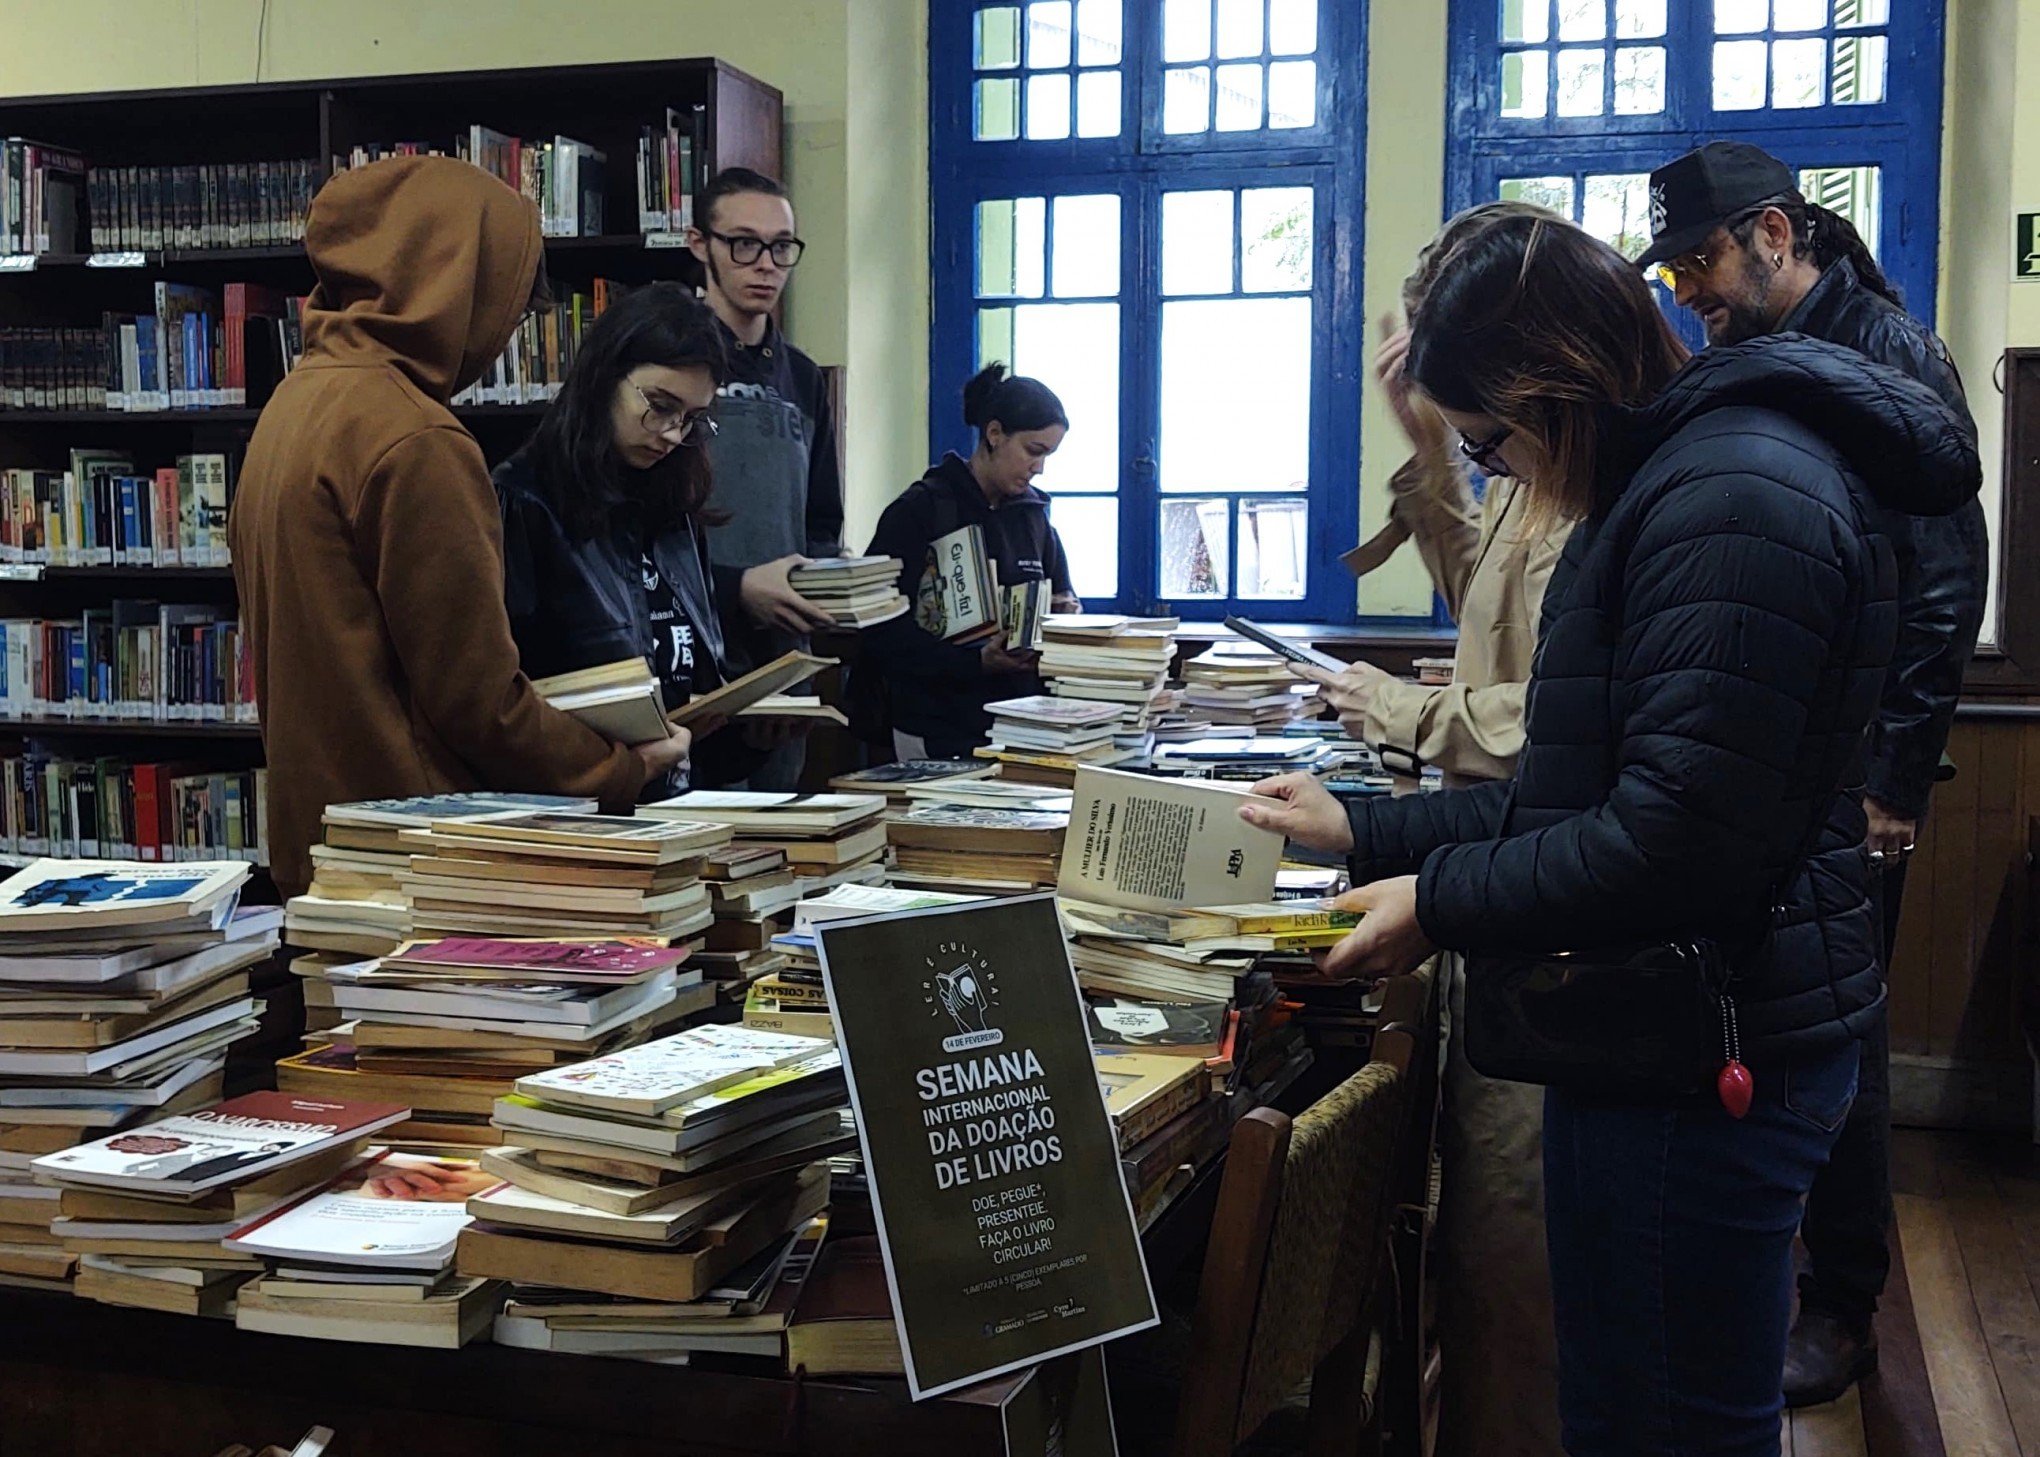 Semana Internacional da Doação de Livros é prorrogada em Gramado